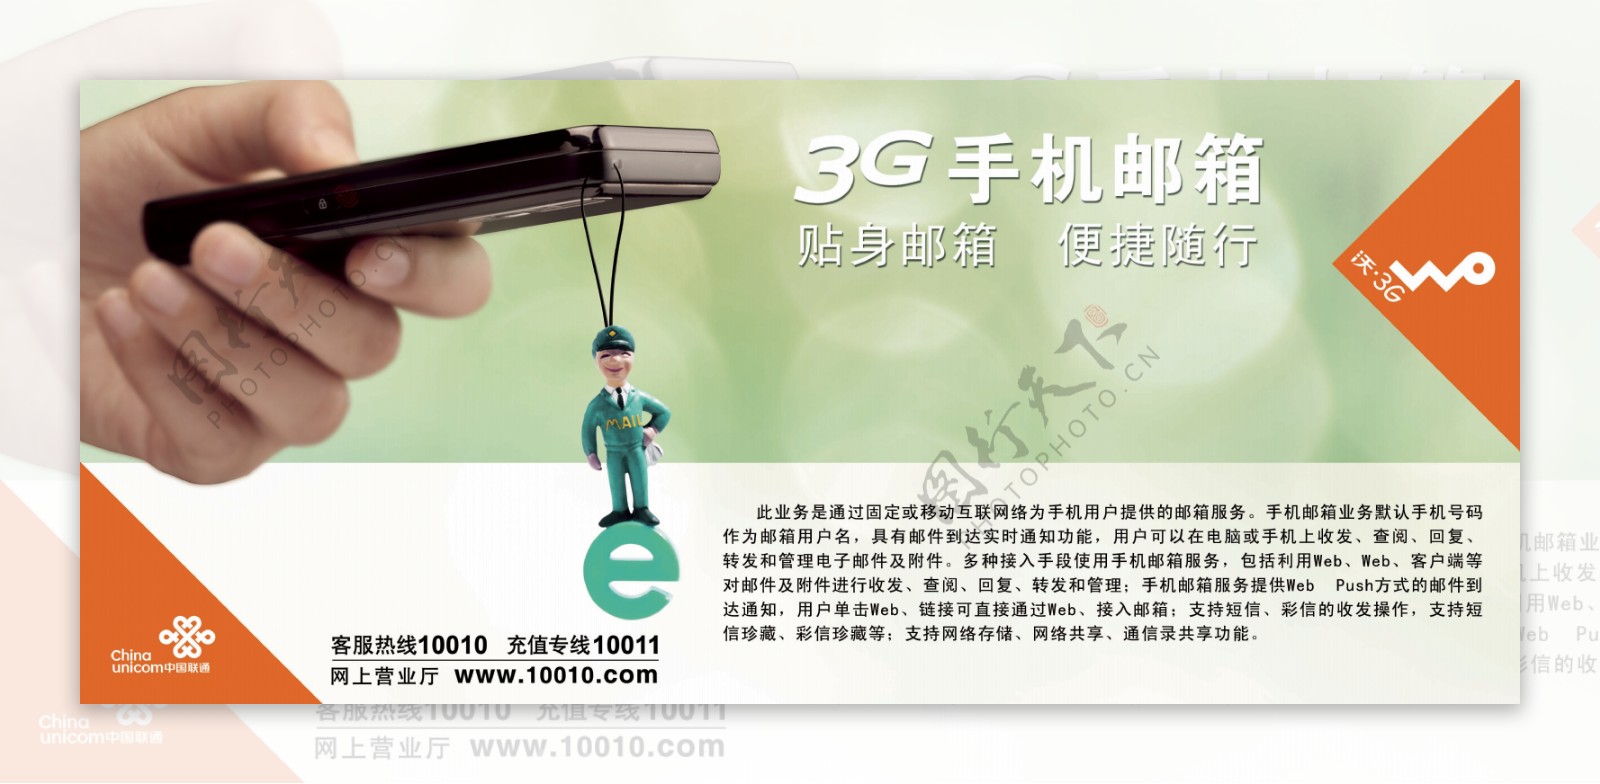 联通3G沃大型户外广告喷绘设计图